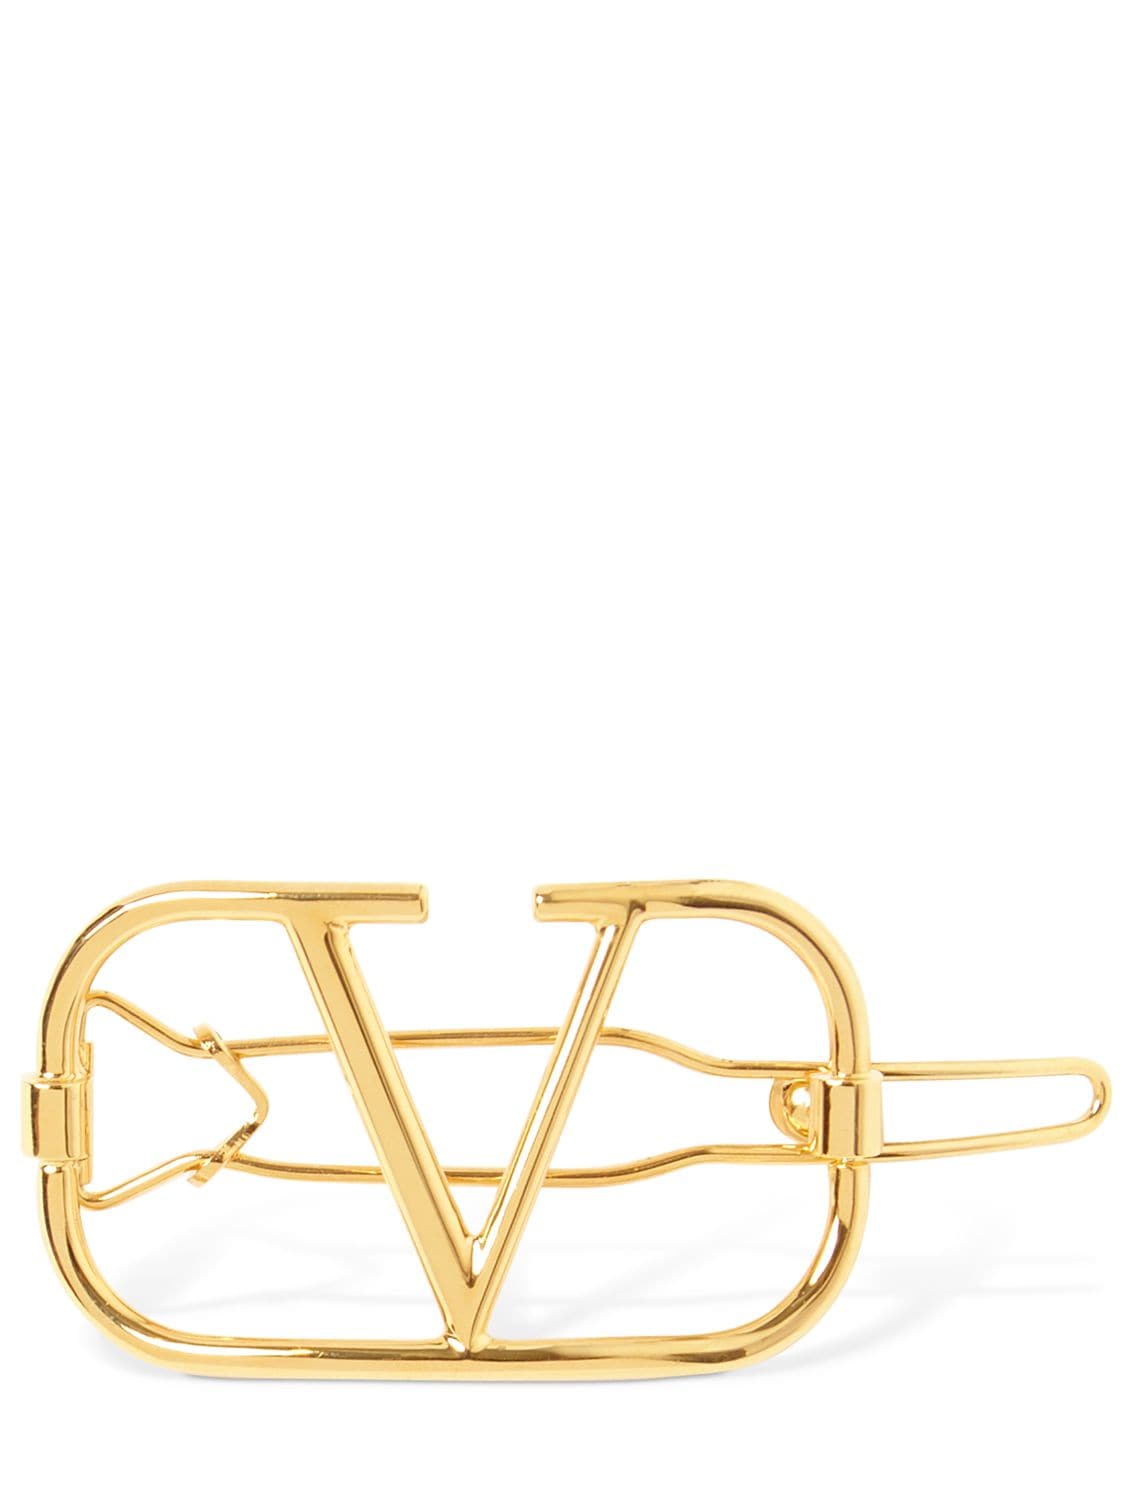 Valentino Garavani VLogo Signature hairclips - Gold